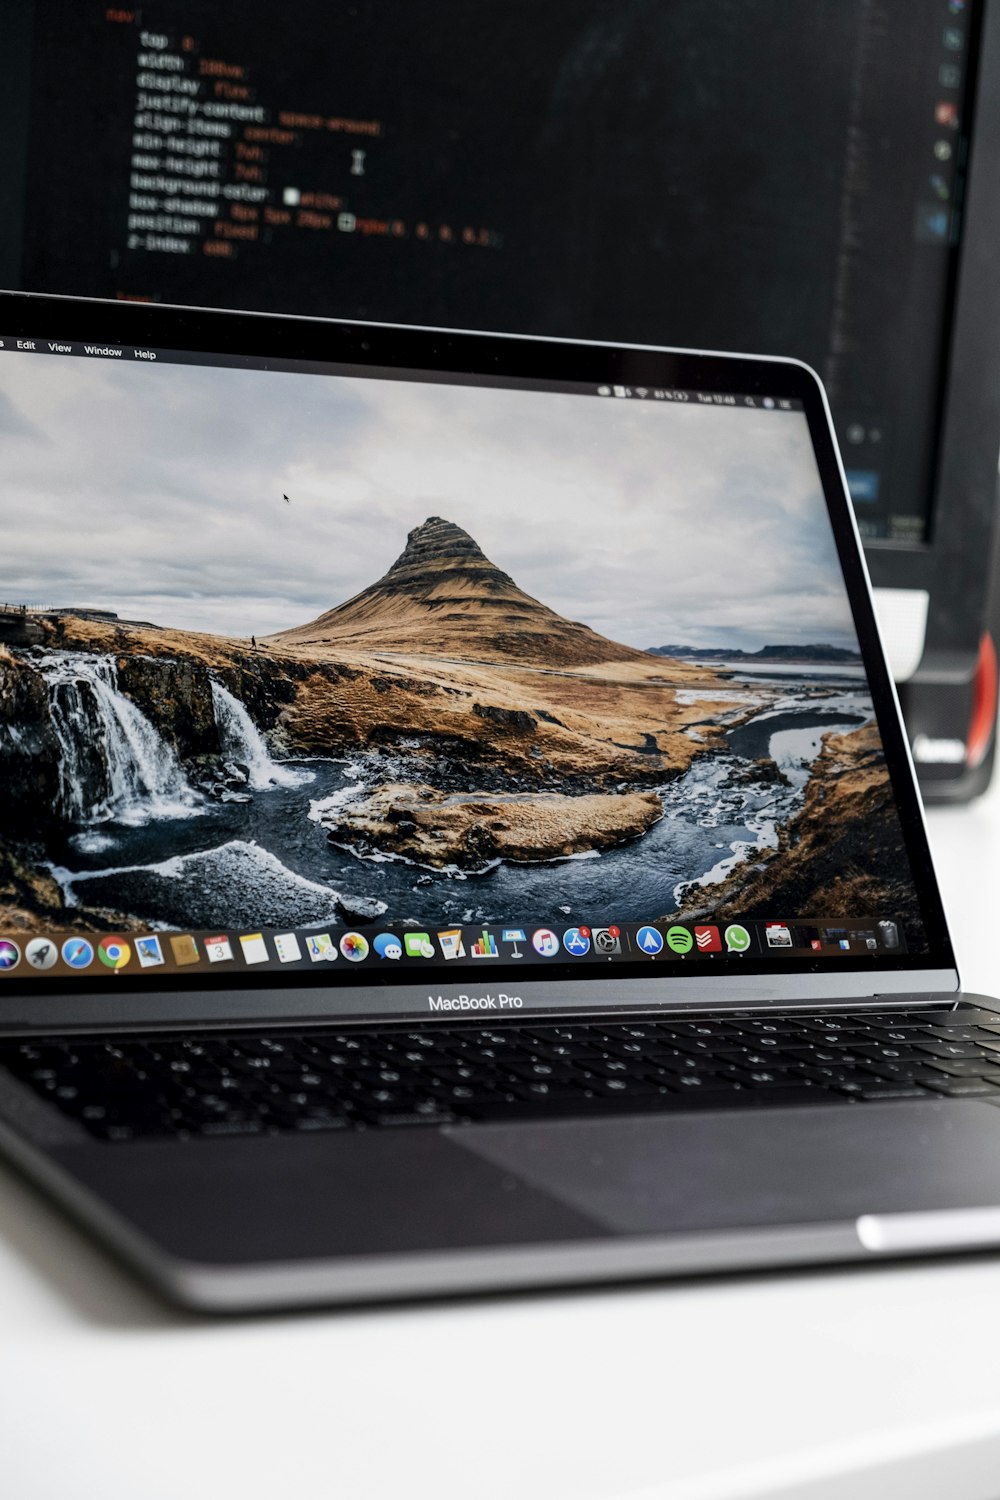 macbook pro displaying brown mountain